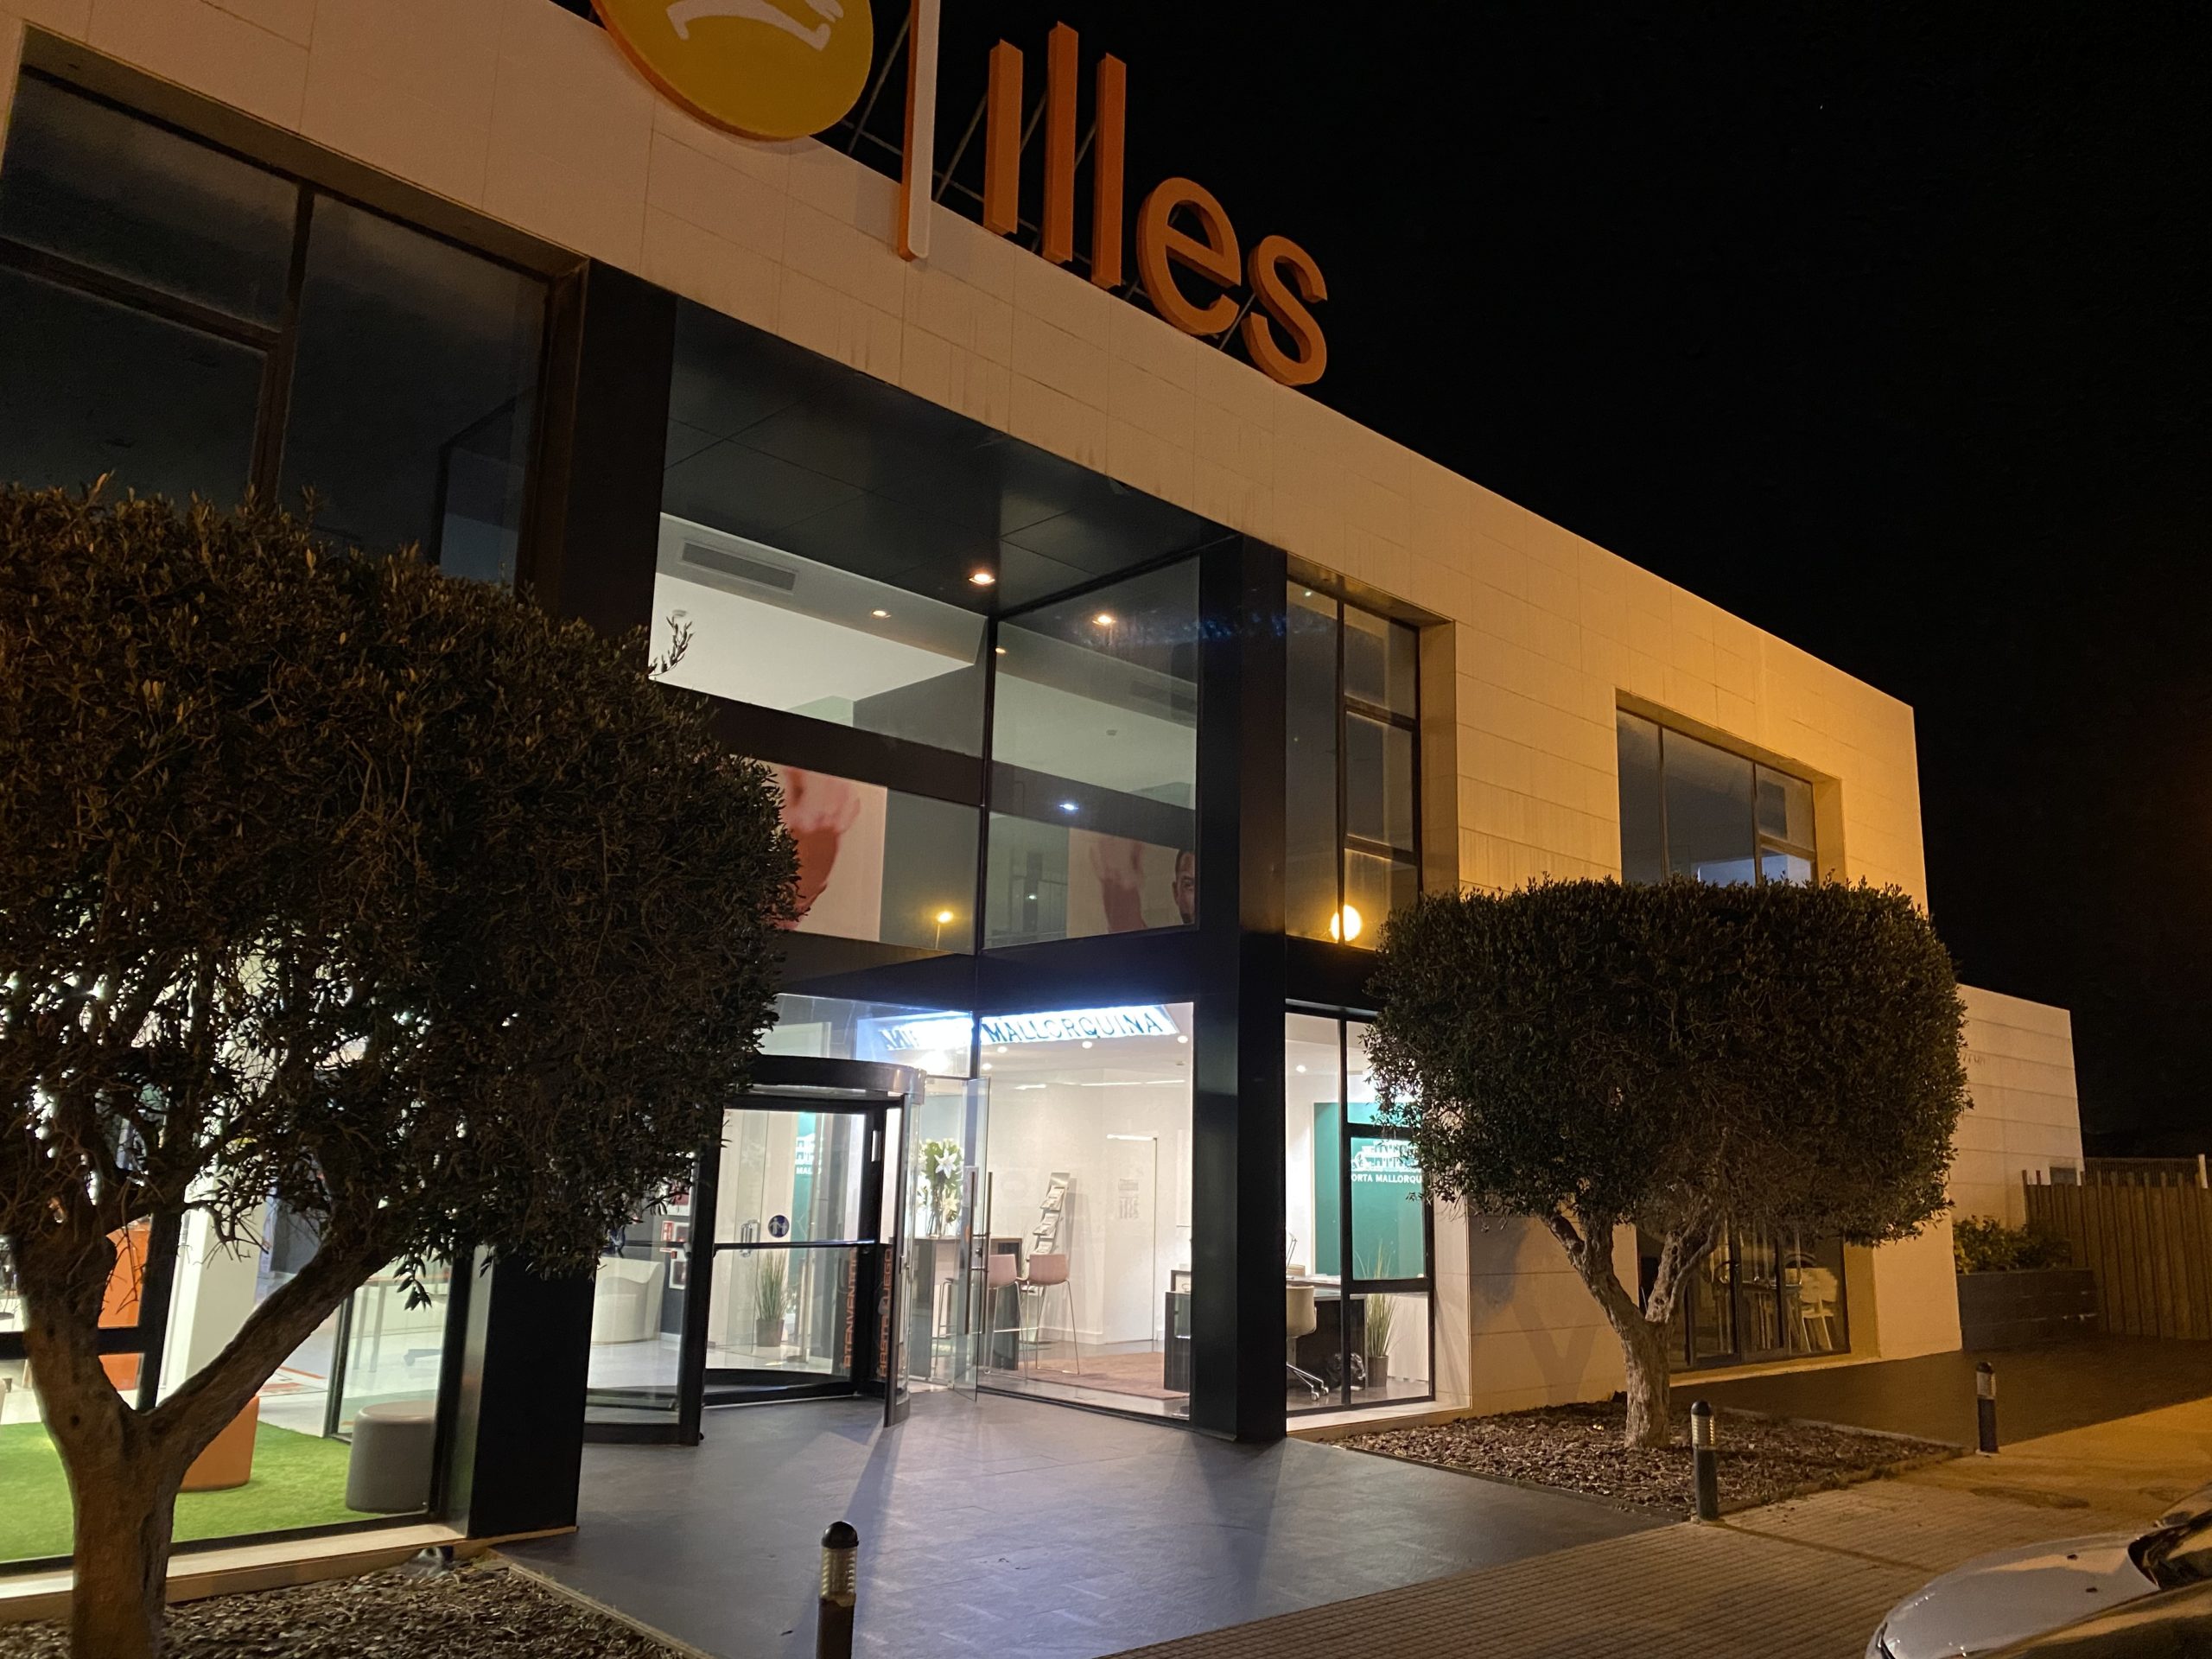 La nueva tienda inmobiliaria de Porta Mallorquina está situada en la entrada del conocido gimnasio Illes, en Carrer de Son Thomas 2, en la conocida zona comercial Son Bugadelles entre Portals Nous y Santa Ponsa